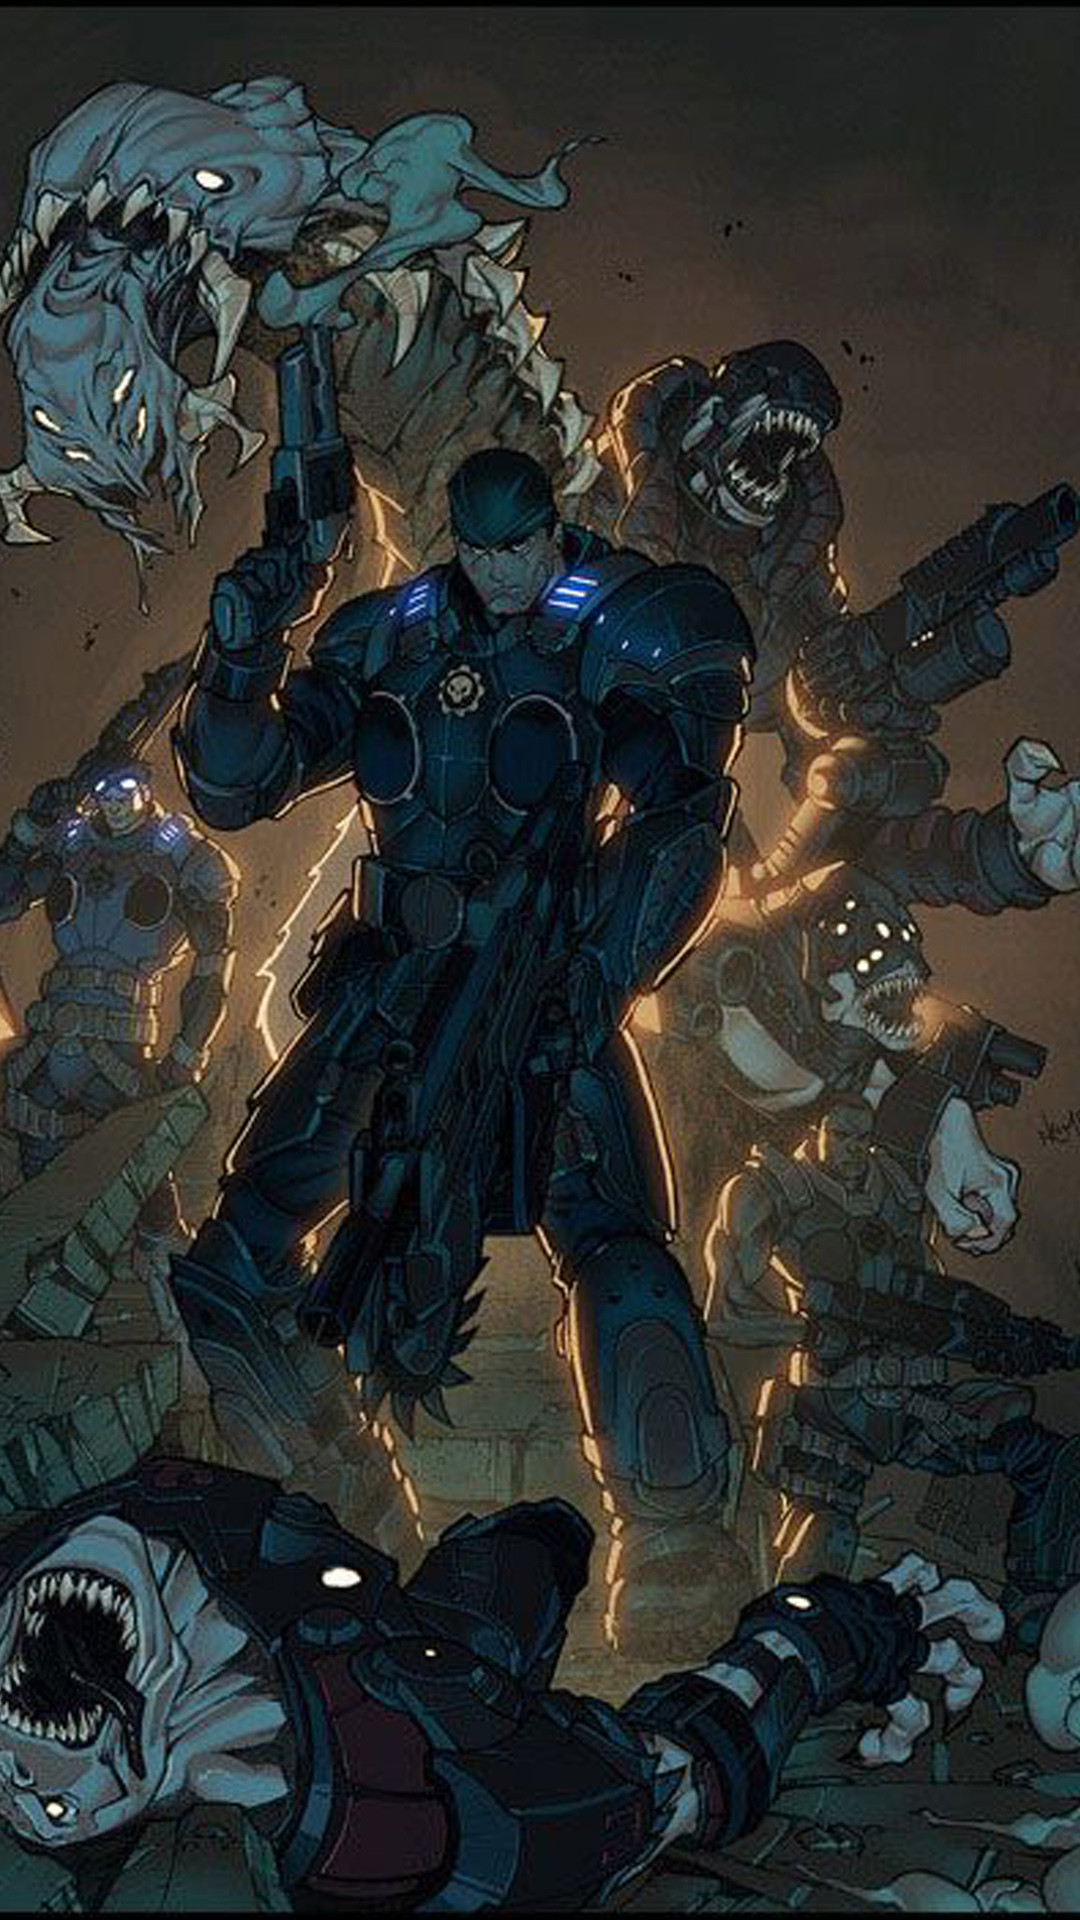 fondo de pantalla de gears of war 4,juego de acción y aventura,personaje de ficción,cg artwork,ilustración,superhéroe